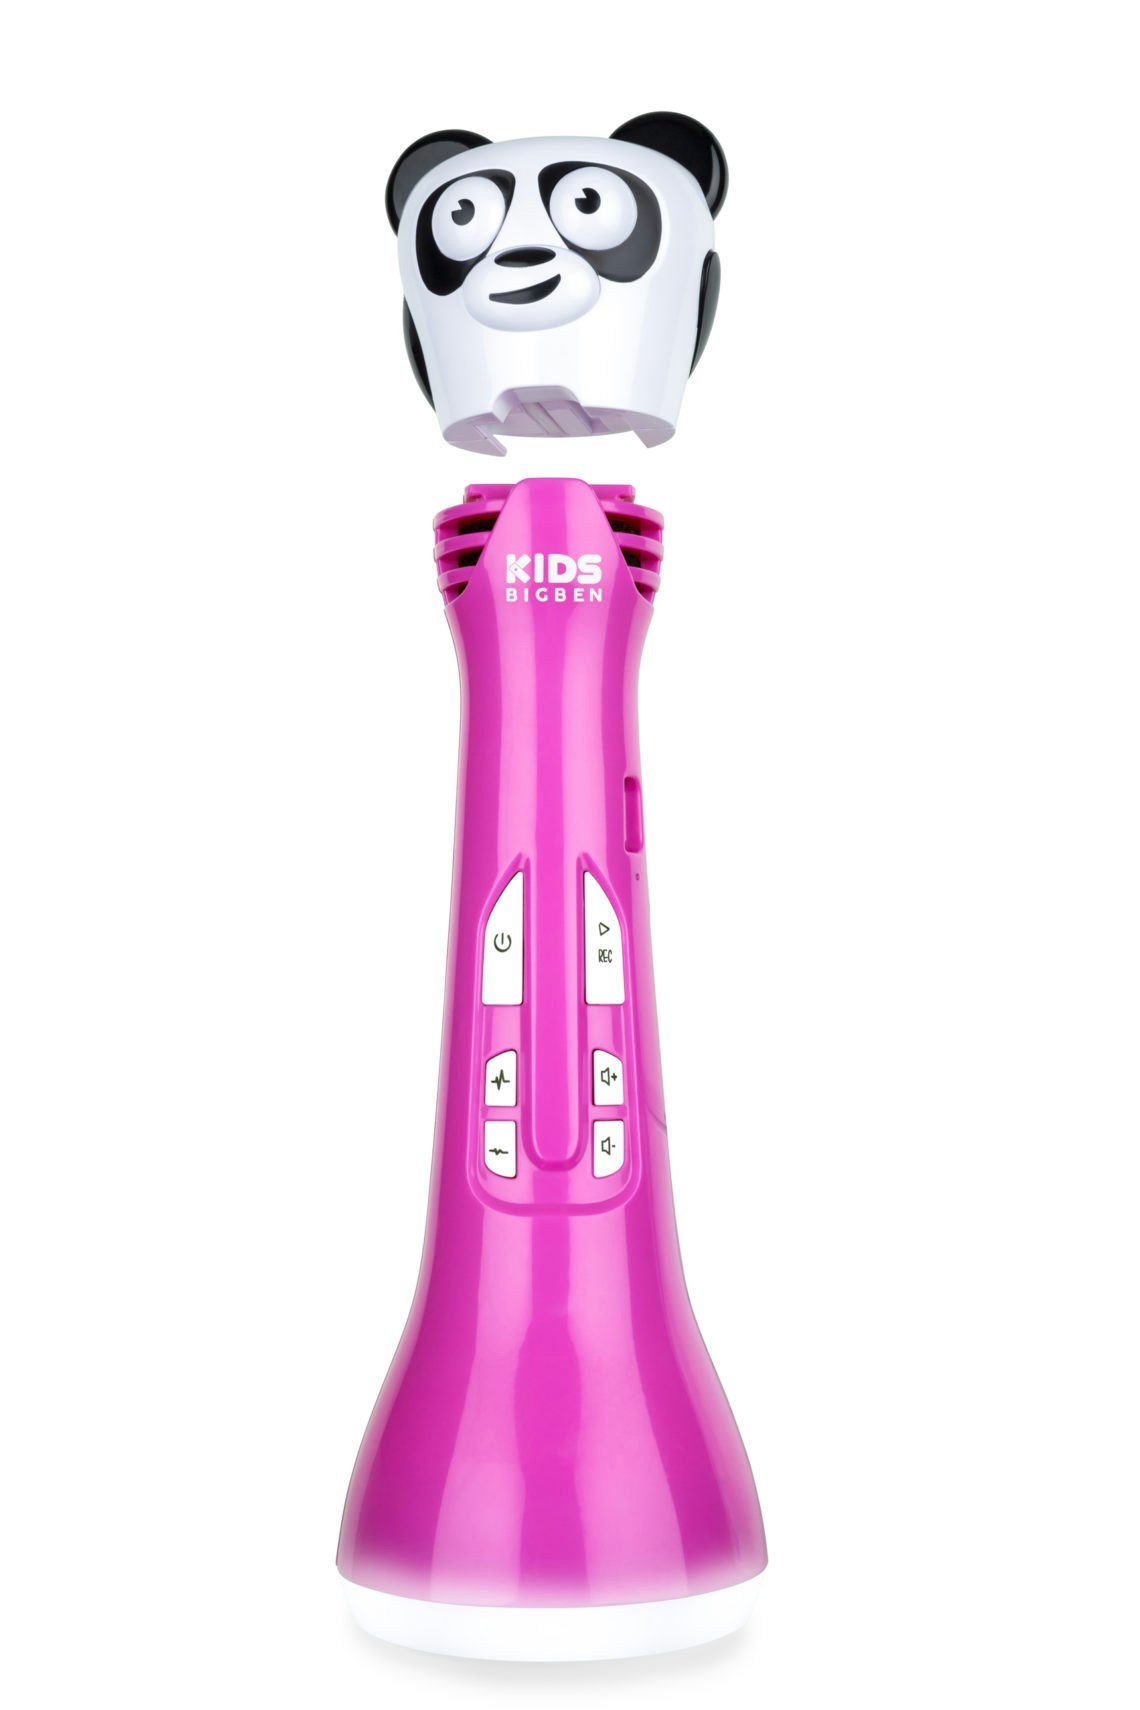 Pink Echo-Modus mit Stimmverzerrer BigBen und KARAOKE, Mikrofon KIDS